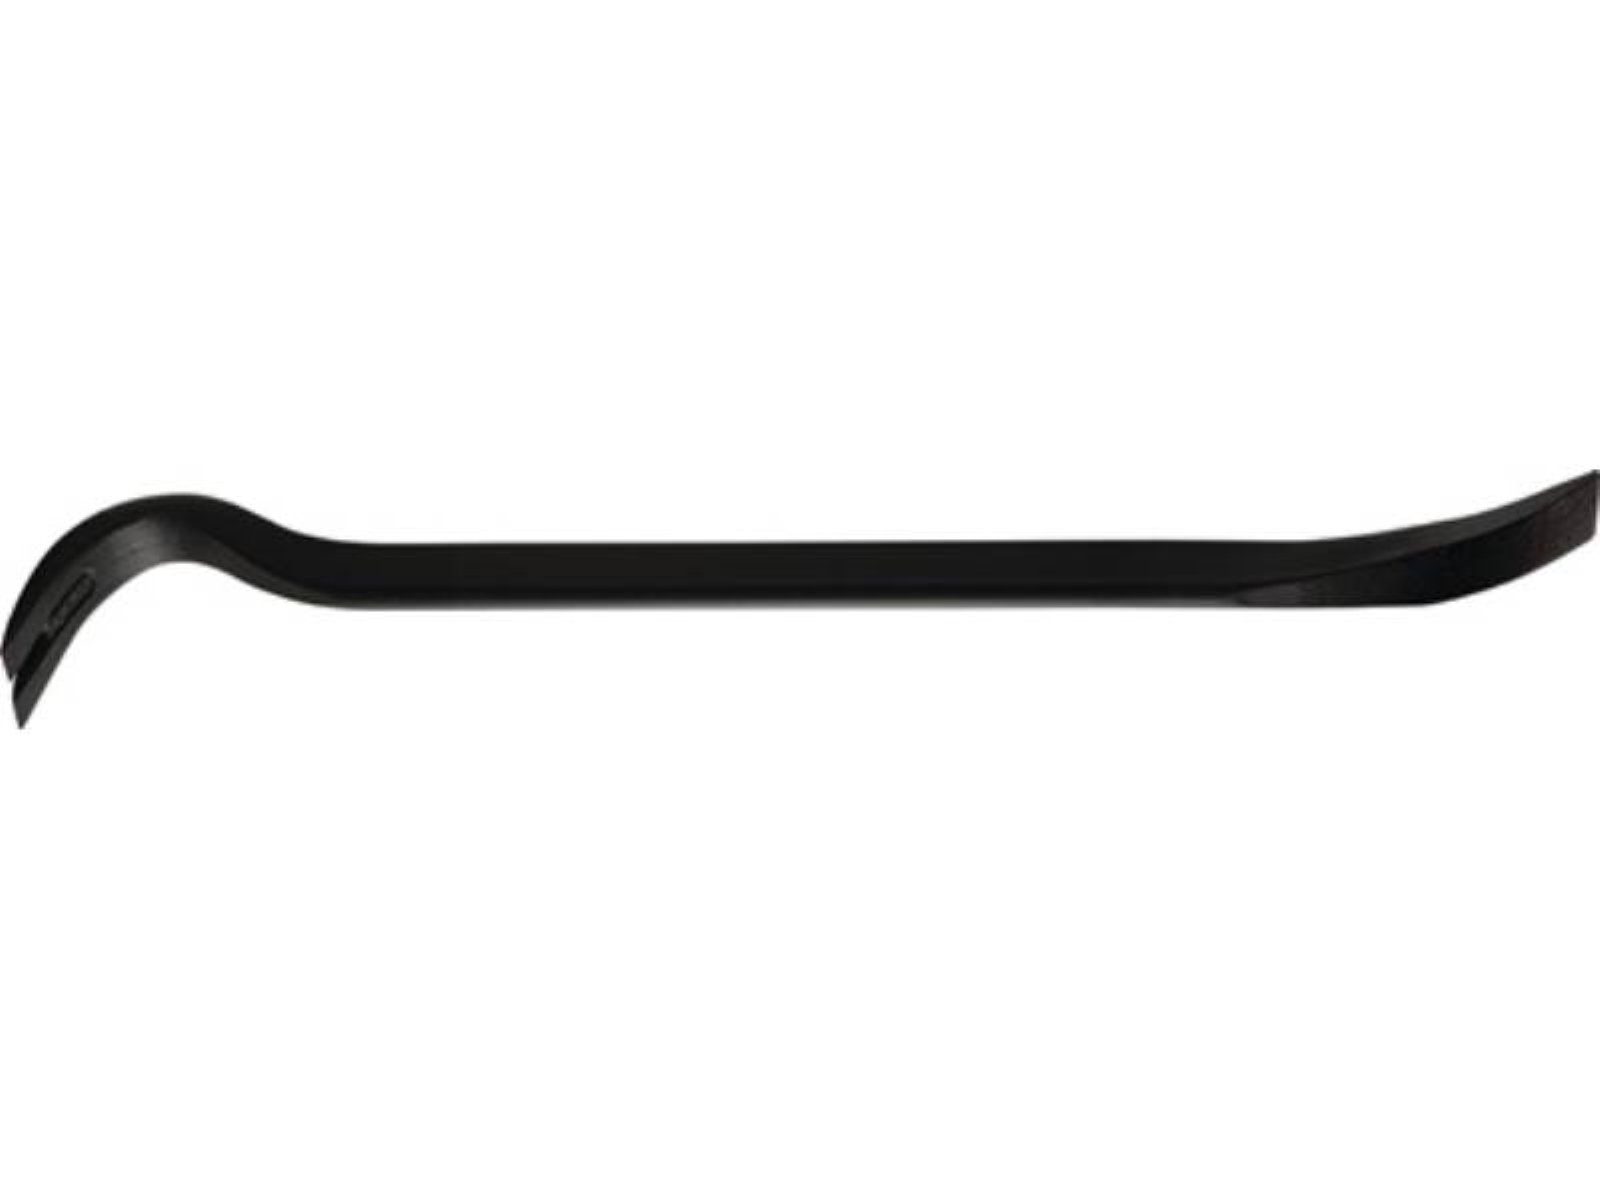 Peddinghaus Nageleisen Nageleisen Power Bar Gesamtlänge 900 mm, ovaler Korpus ovale Form mit